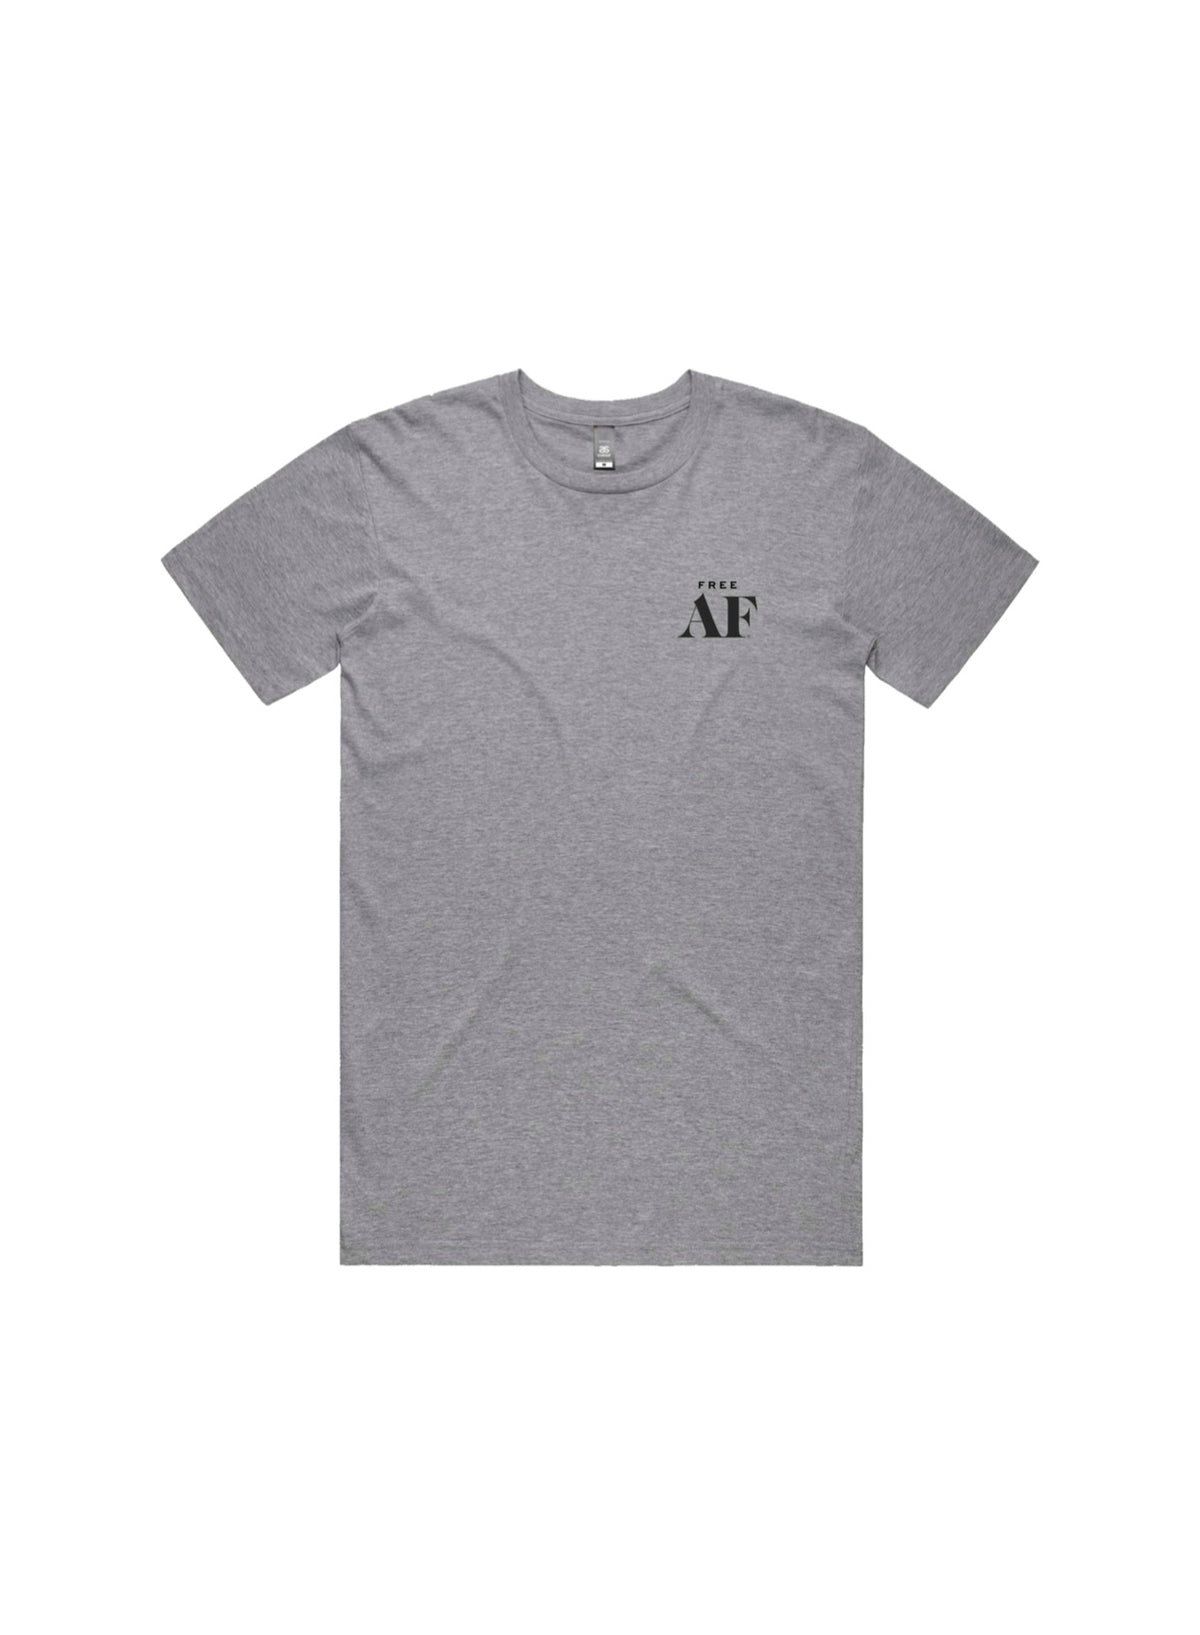 Free AF Men's T-Shirt